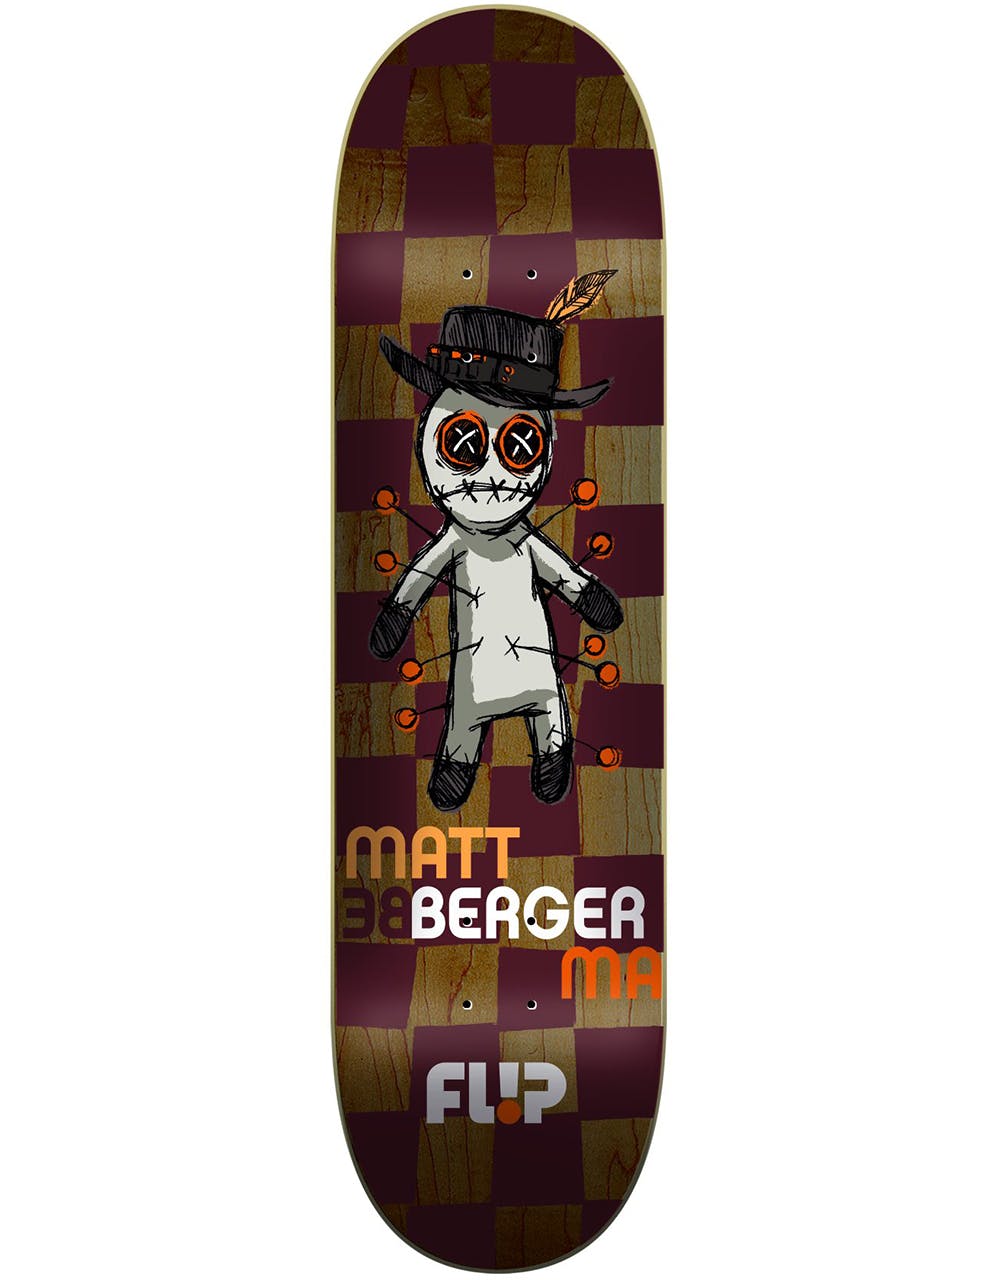 Flip Berger ZC2 Skateboard Deck - 8.04"